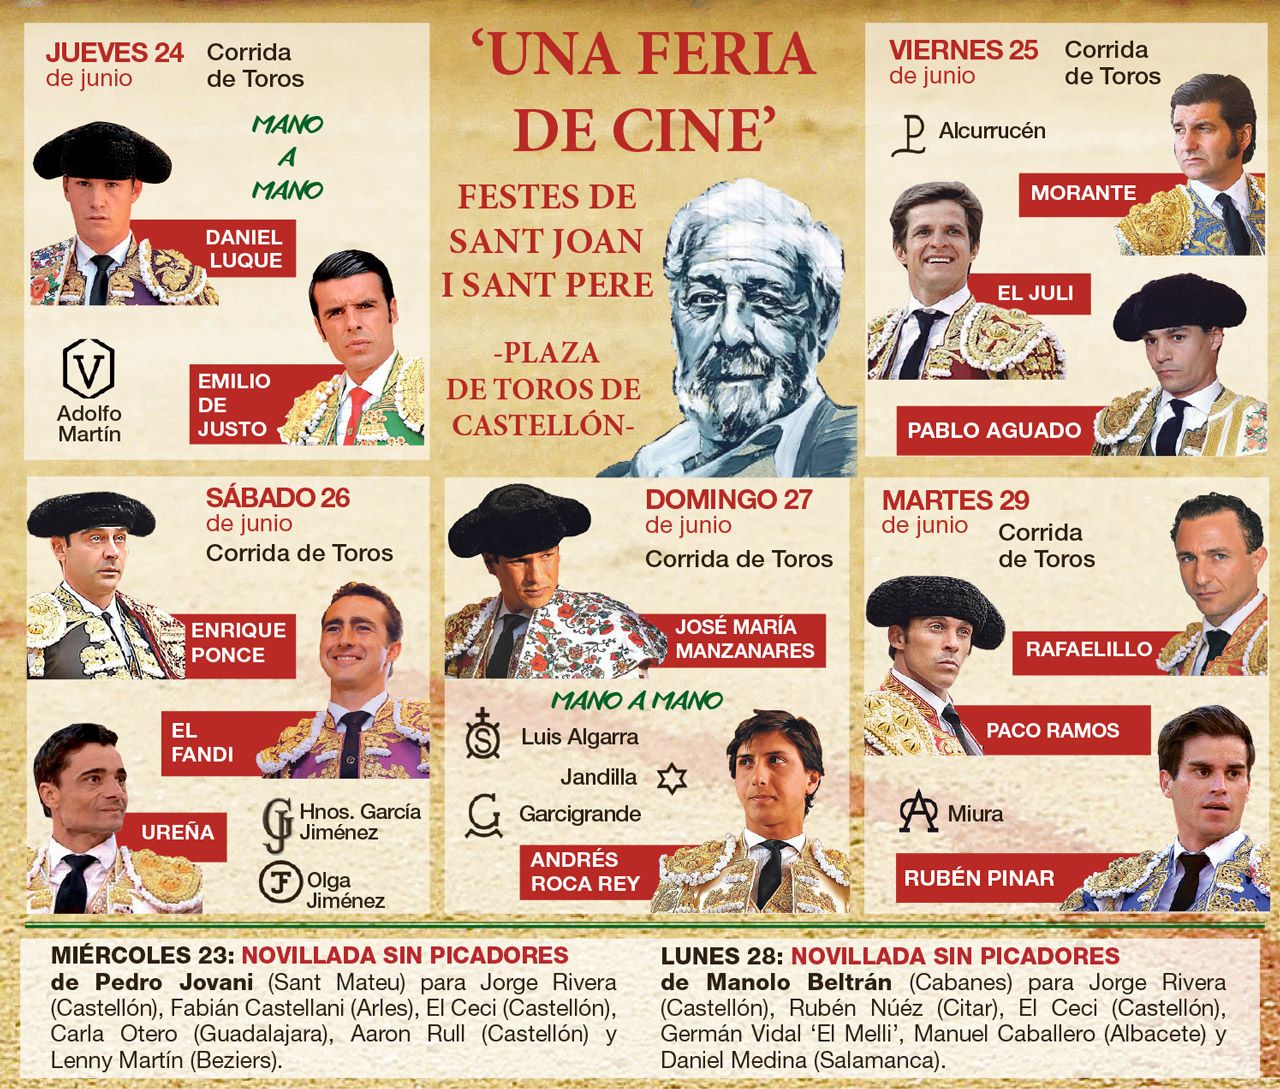 Cartel completo de la Feria de cine dedicada en Castellón al cineasta valenciano Luis García Berlanga con motivo del centenario de su nacimiento.